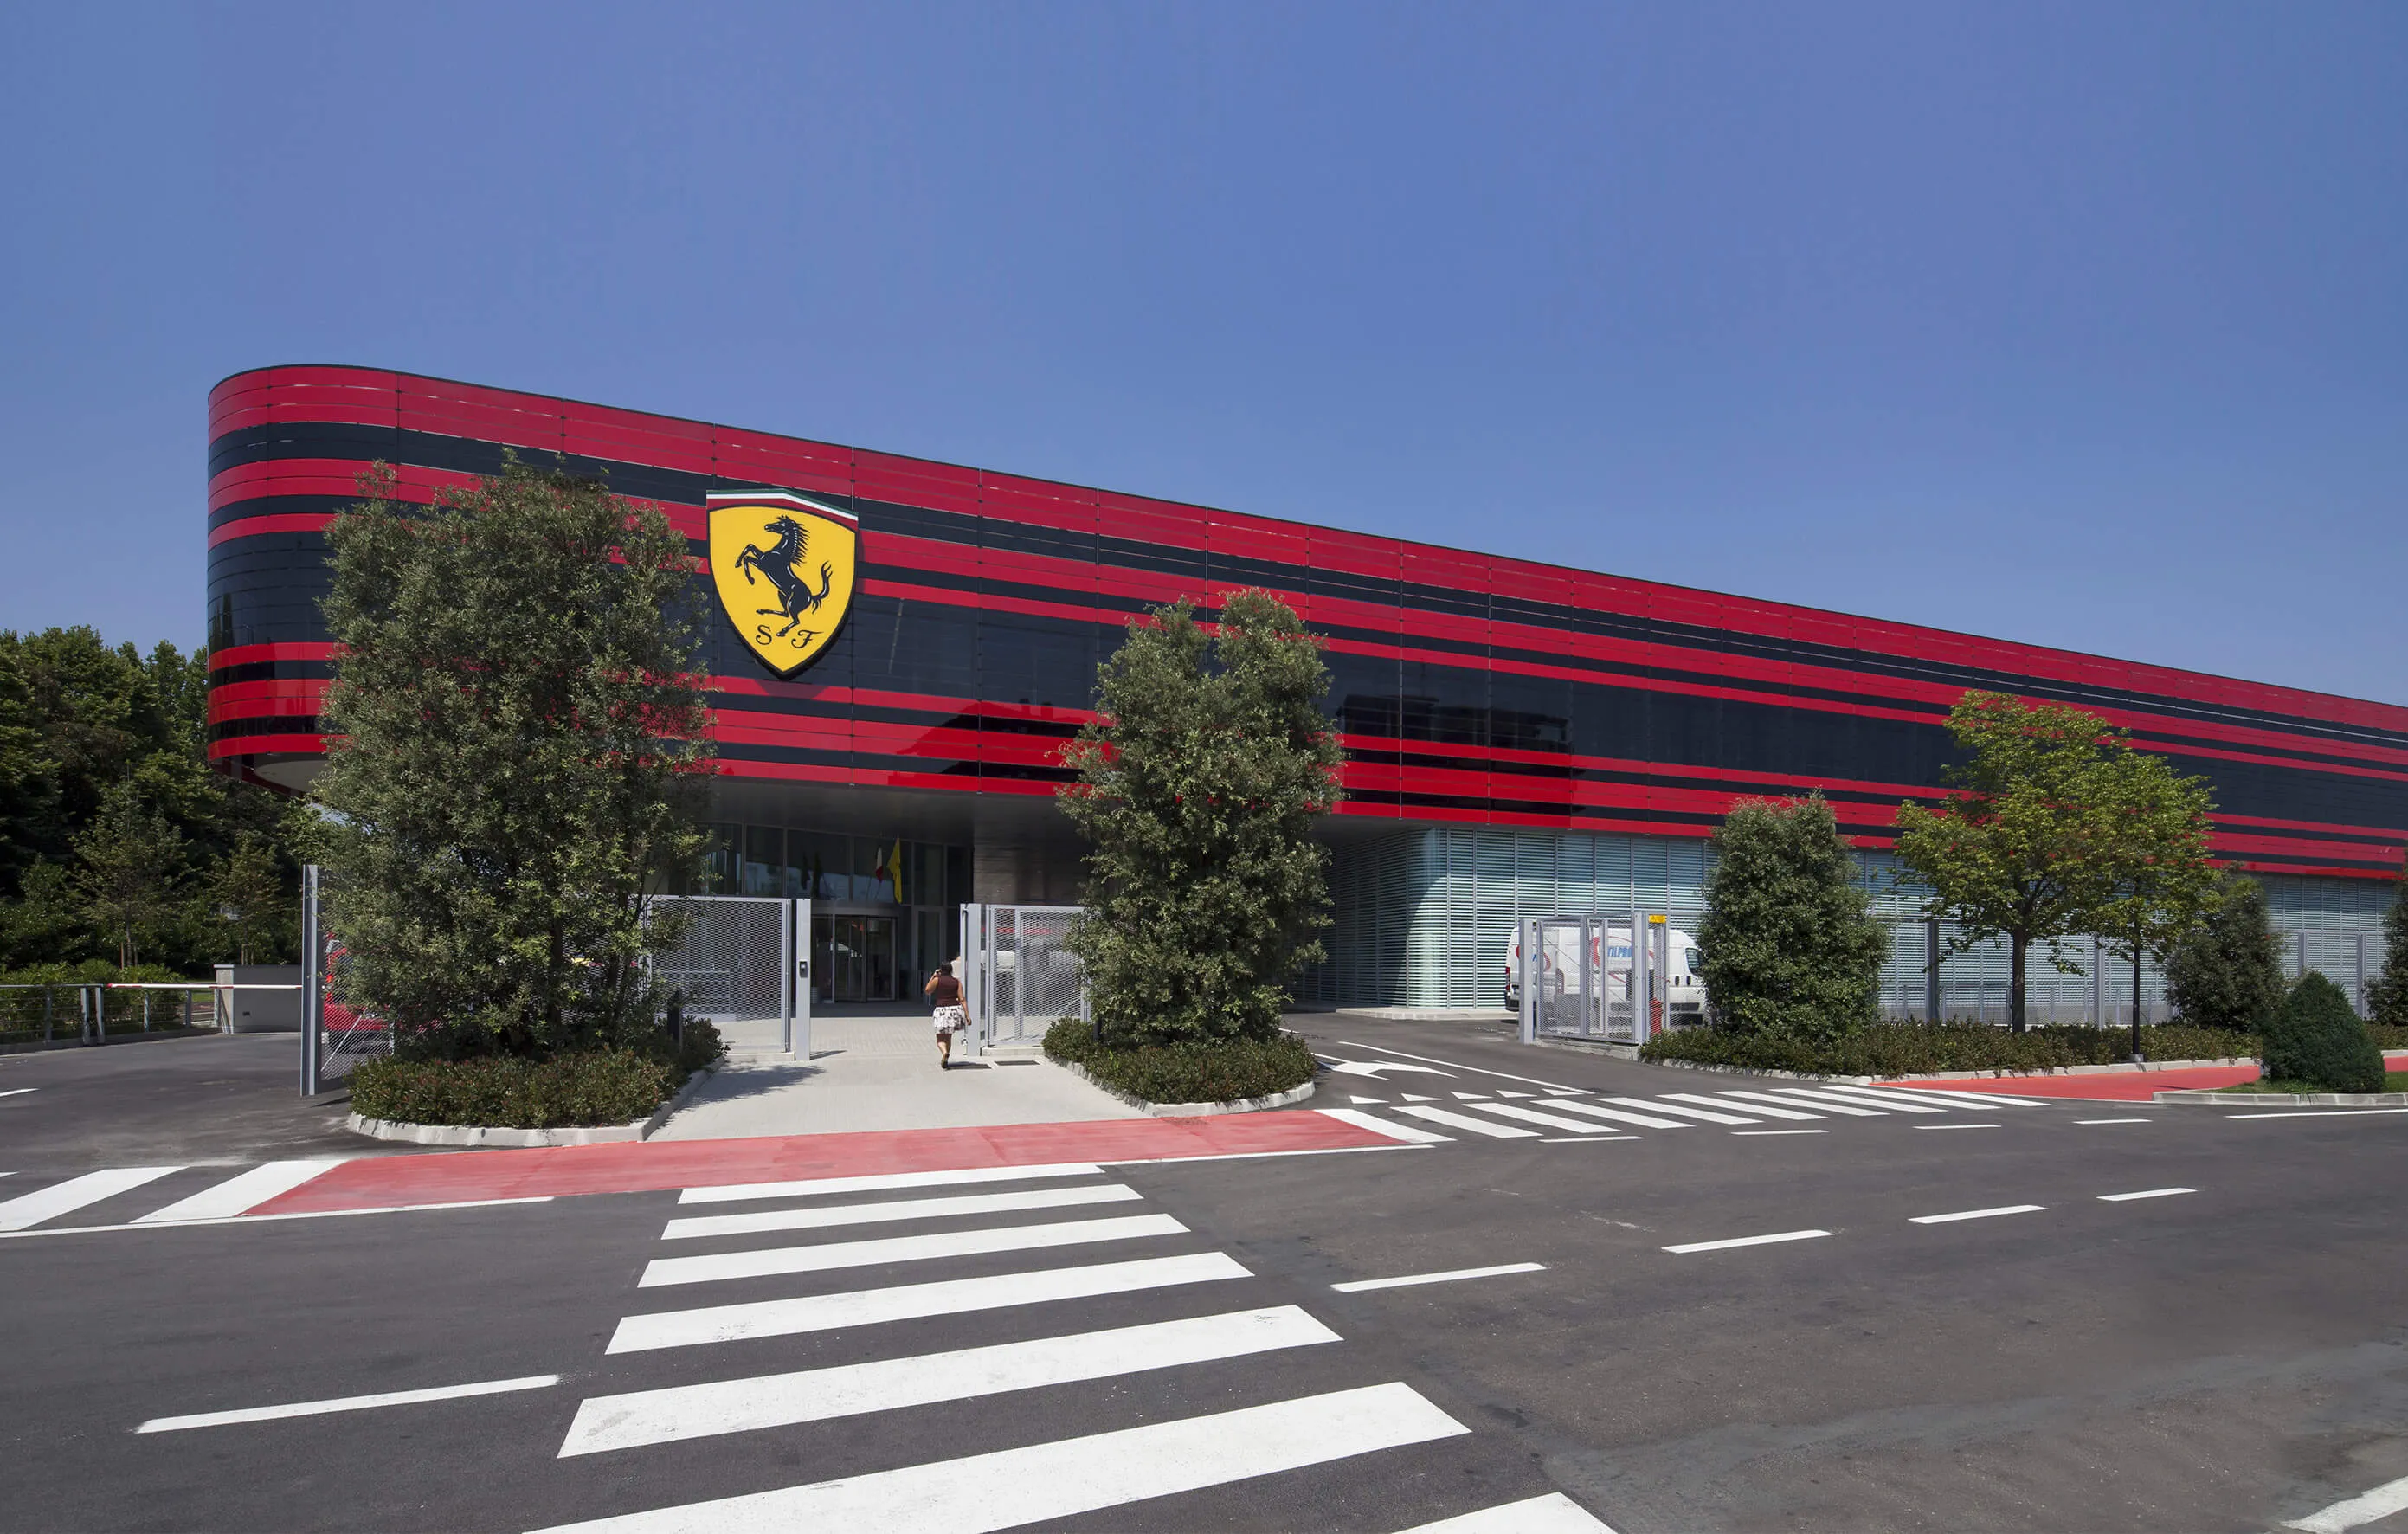 Ferrarijevo sjedište Maranello Italija